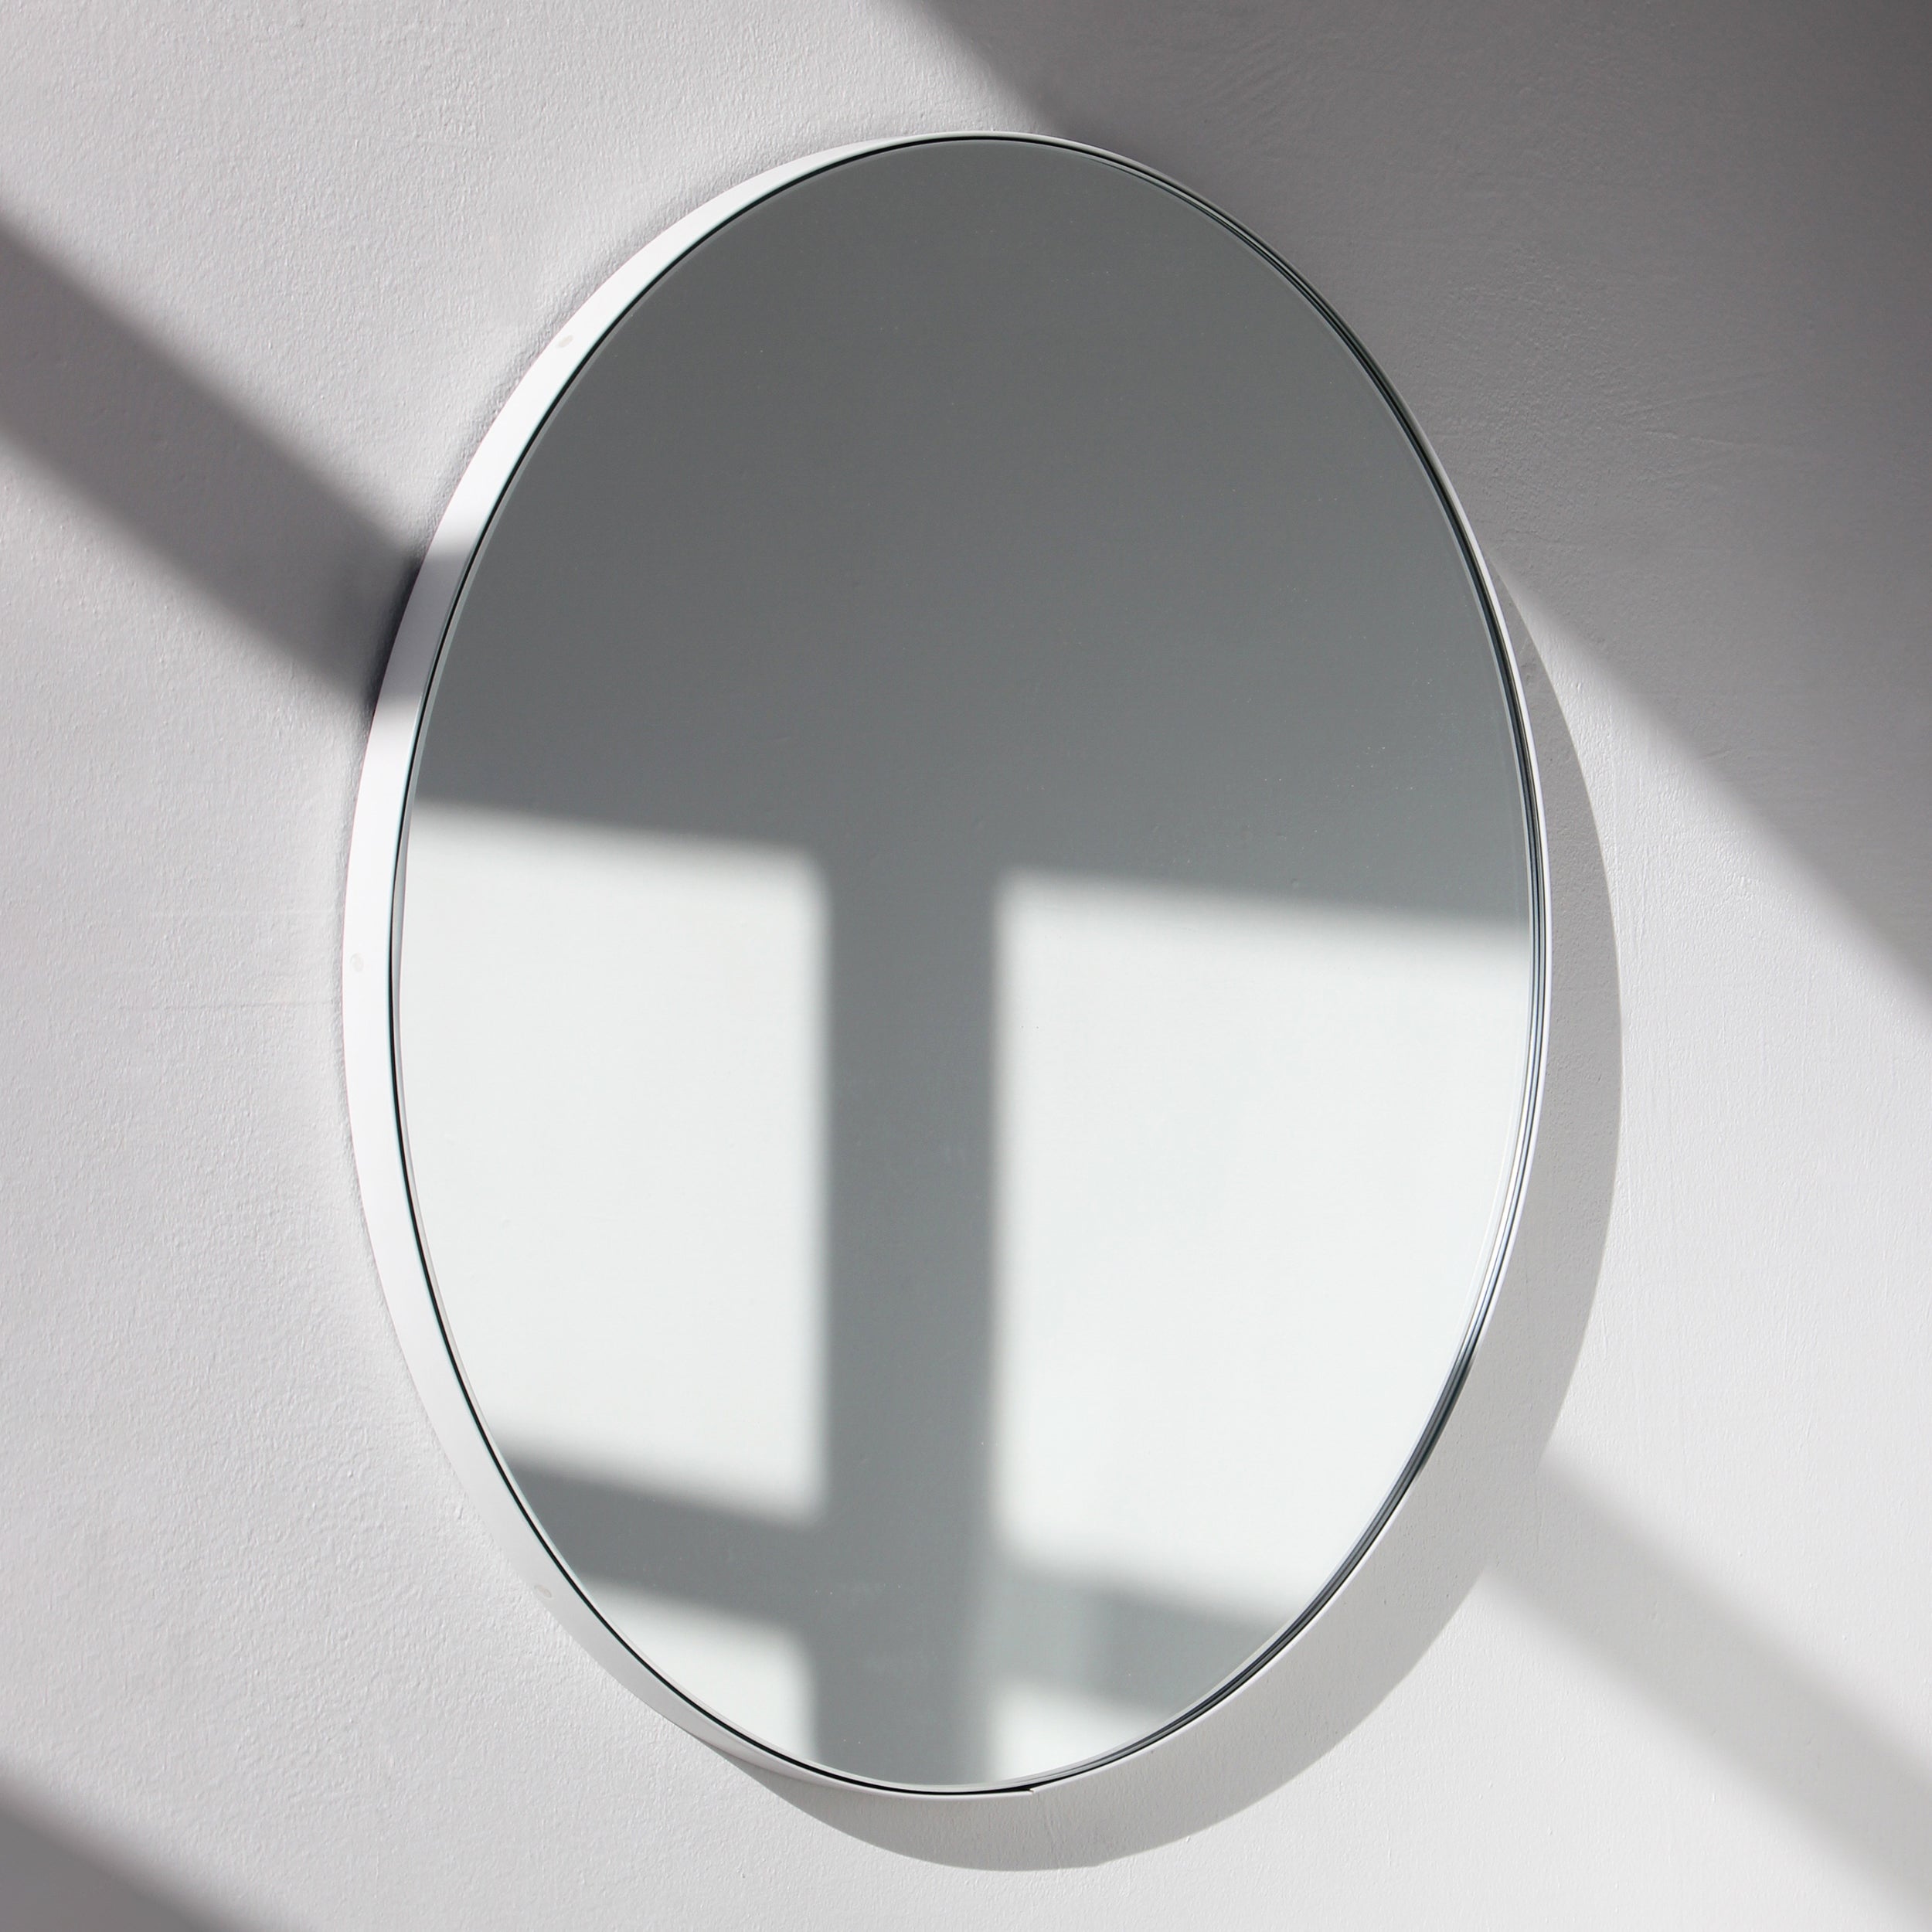 Orbis Round Handcrafted Modern Mirror with White Frame, Regular